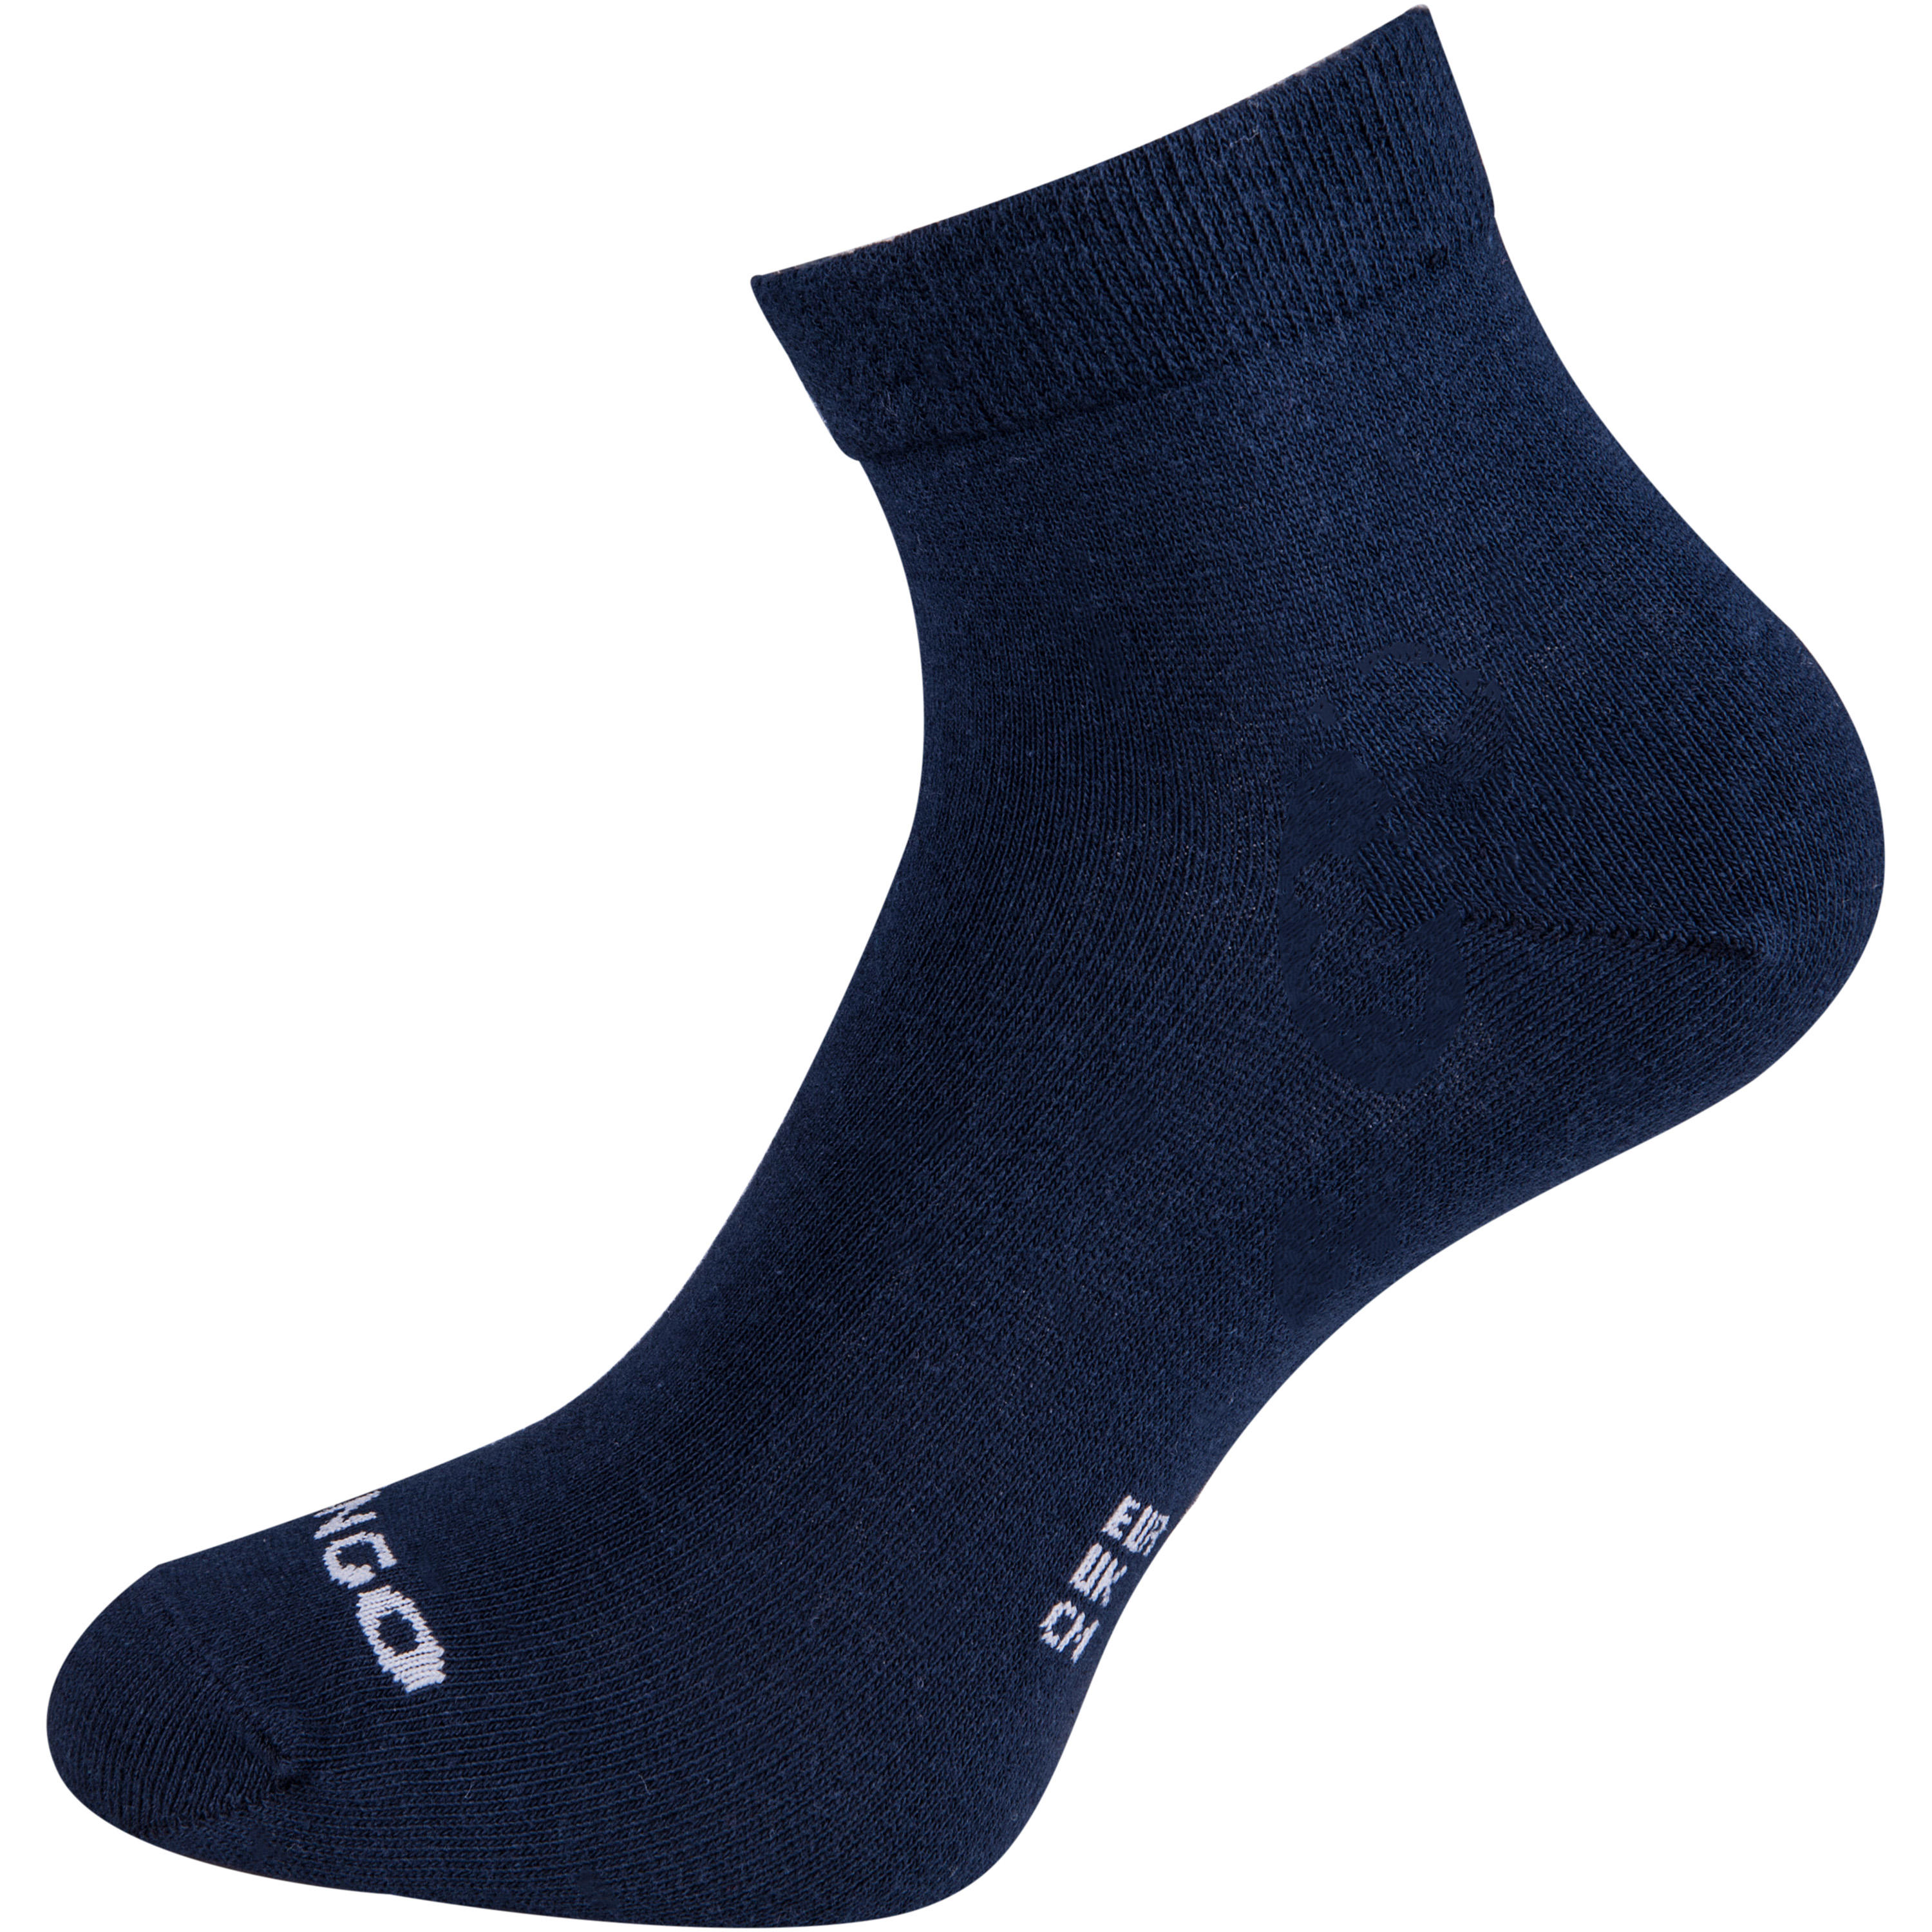 RS 160 Adult Mid Sports Socks Tri-Pack - Black 4/12